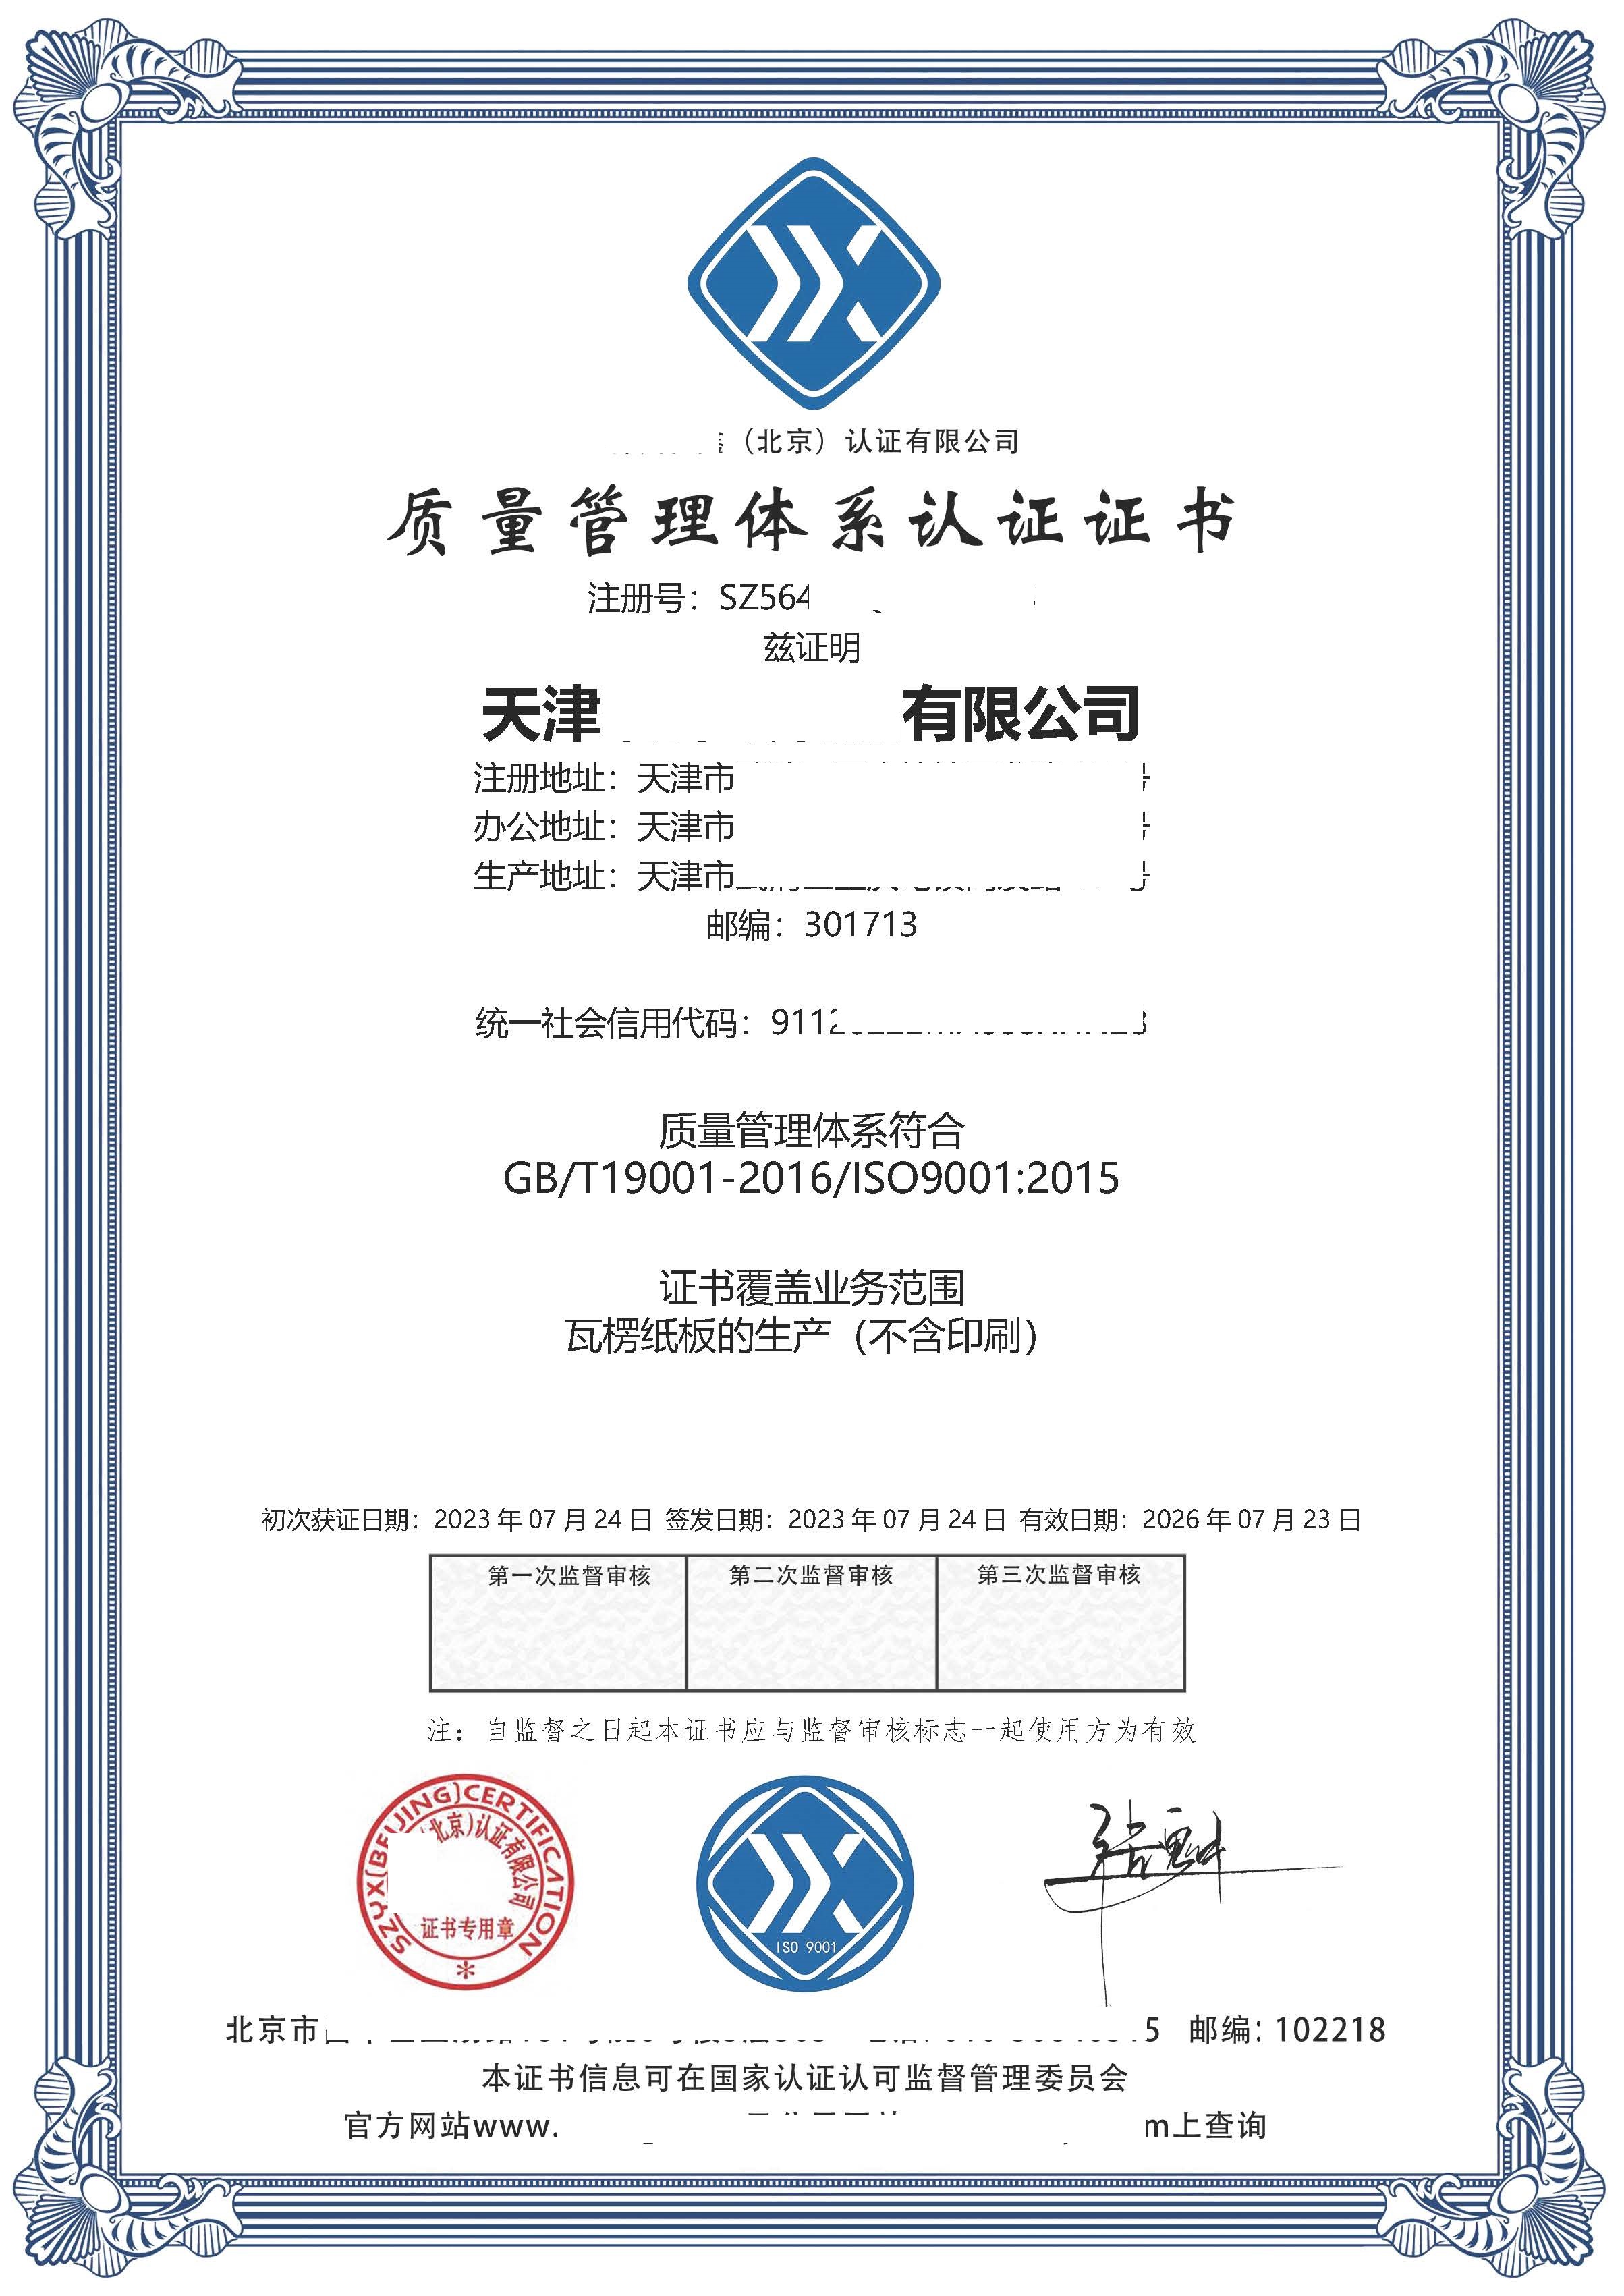 恭喜天津**纸制品有限公司获得质量管理体系认证证书